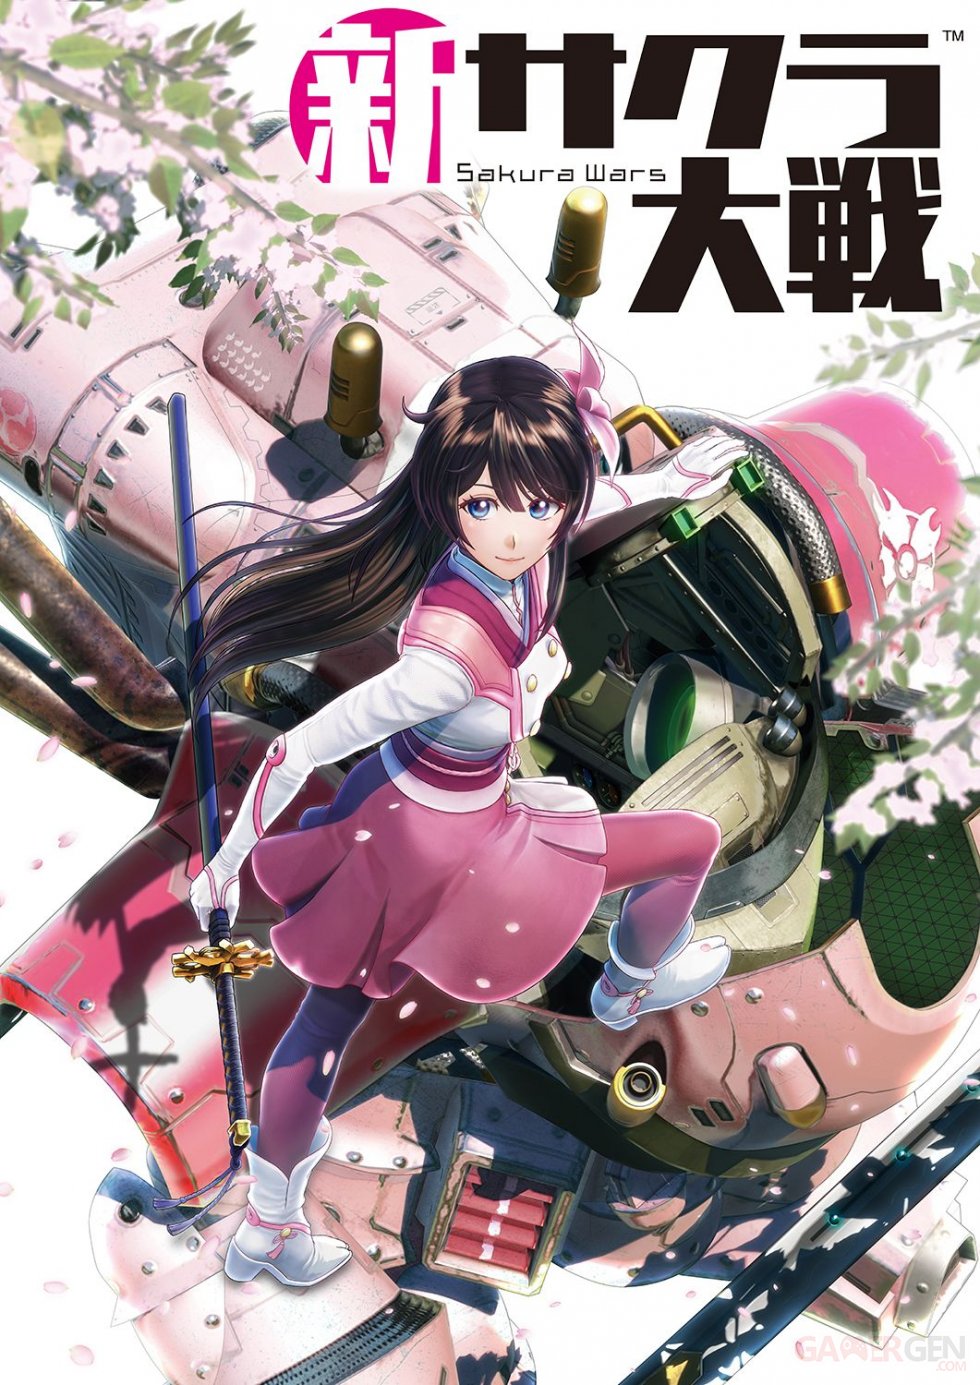 Project-Sakura-Wars-01-22-08-2019